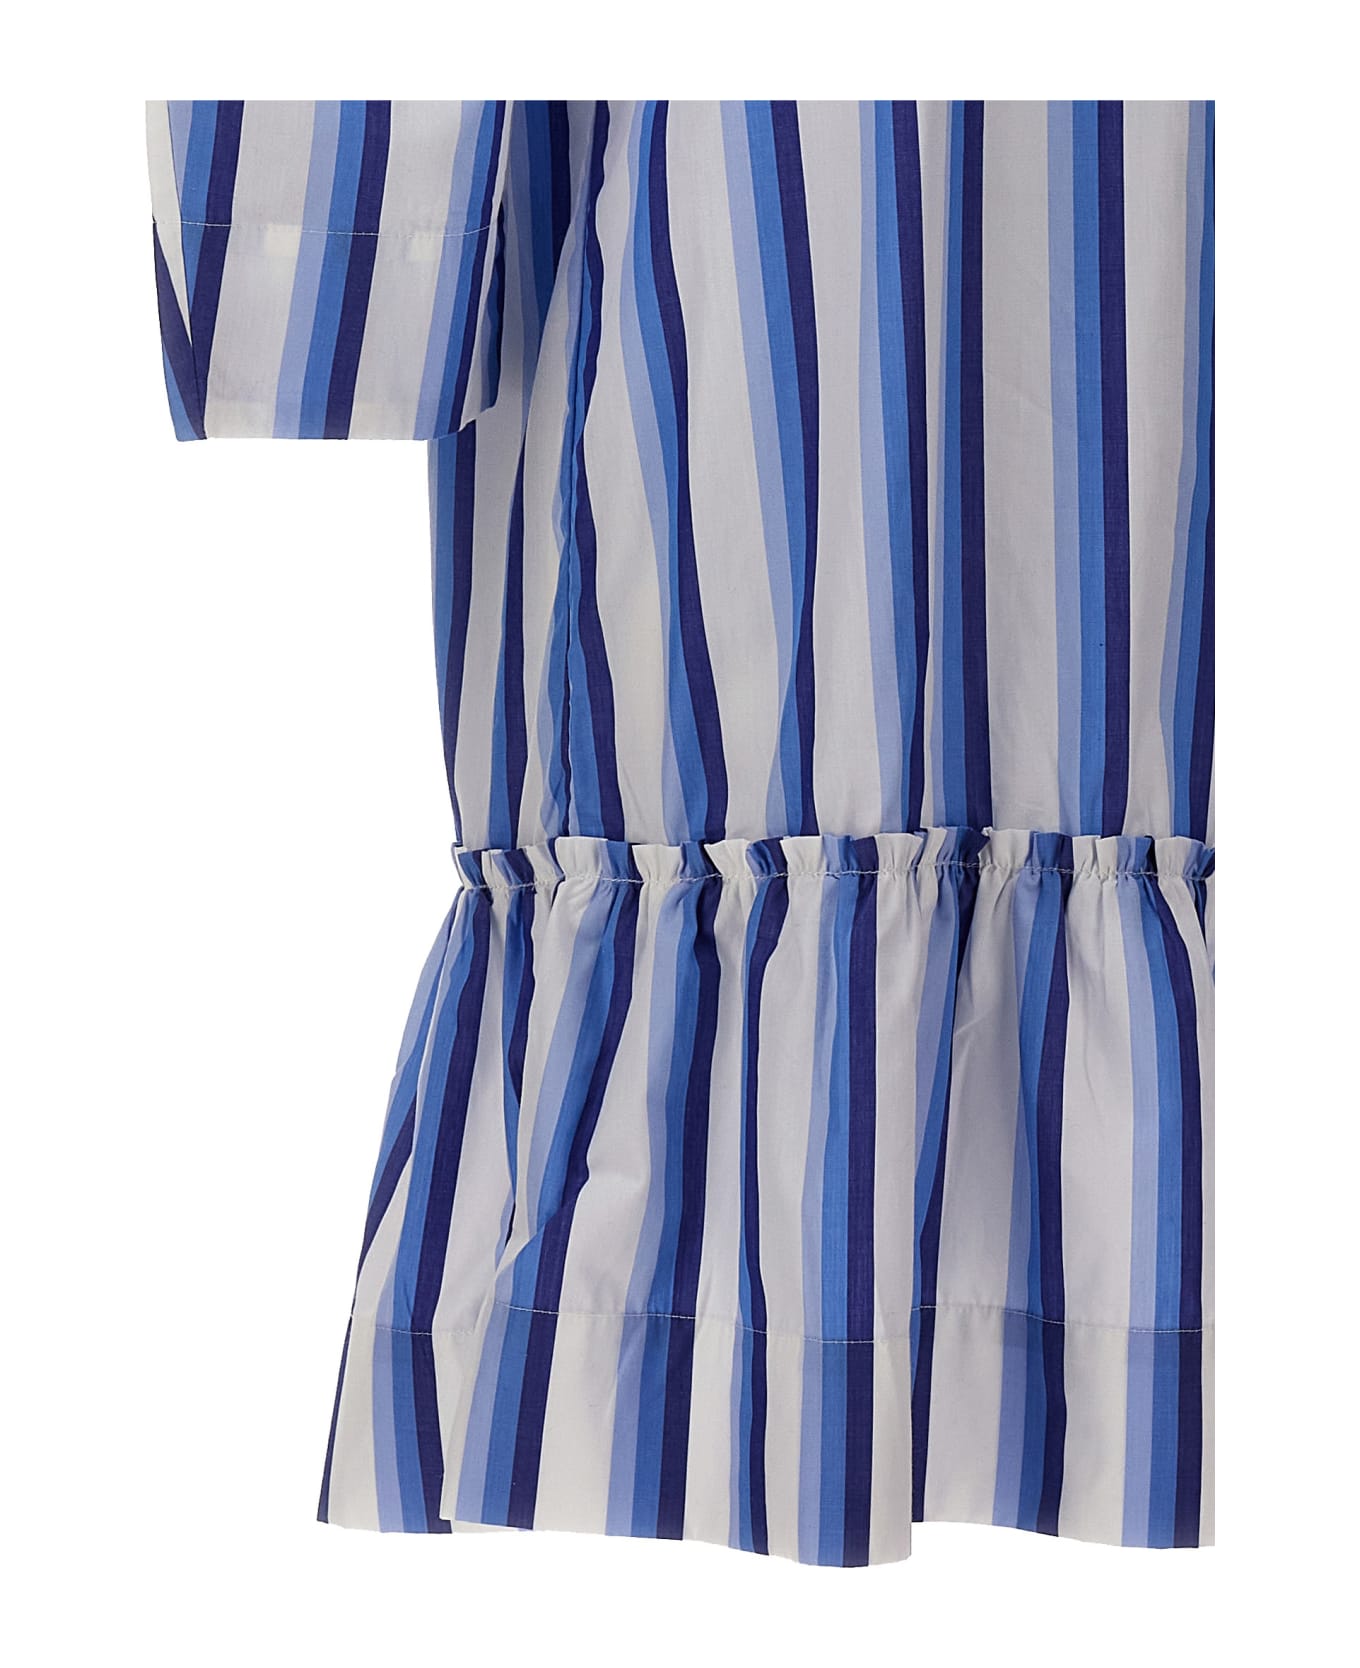 Ganni Striped Shirt Dress - Light Blue